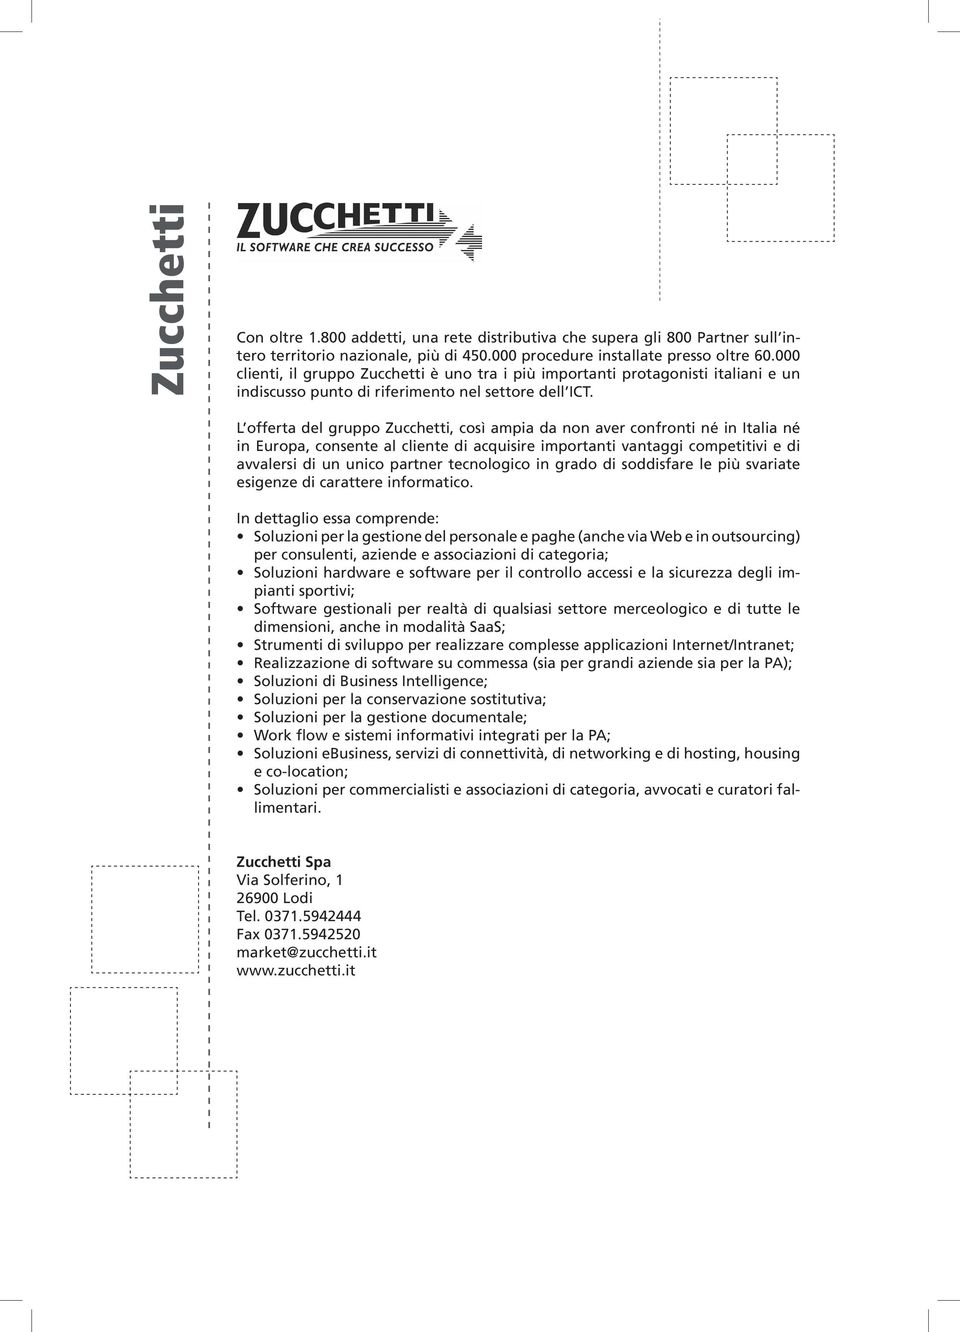 L offerta del gruppo Zucchetti, così ampia da non aver confronti né in Italia né in Europa, consente al cliente di acquisire importanti vantaggi competitivi e di avvalersi di un unico partner